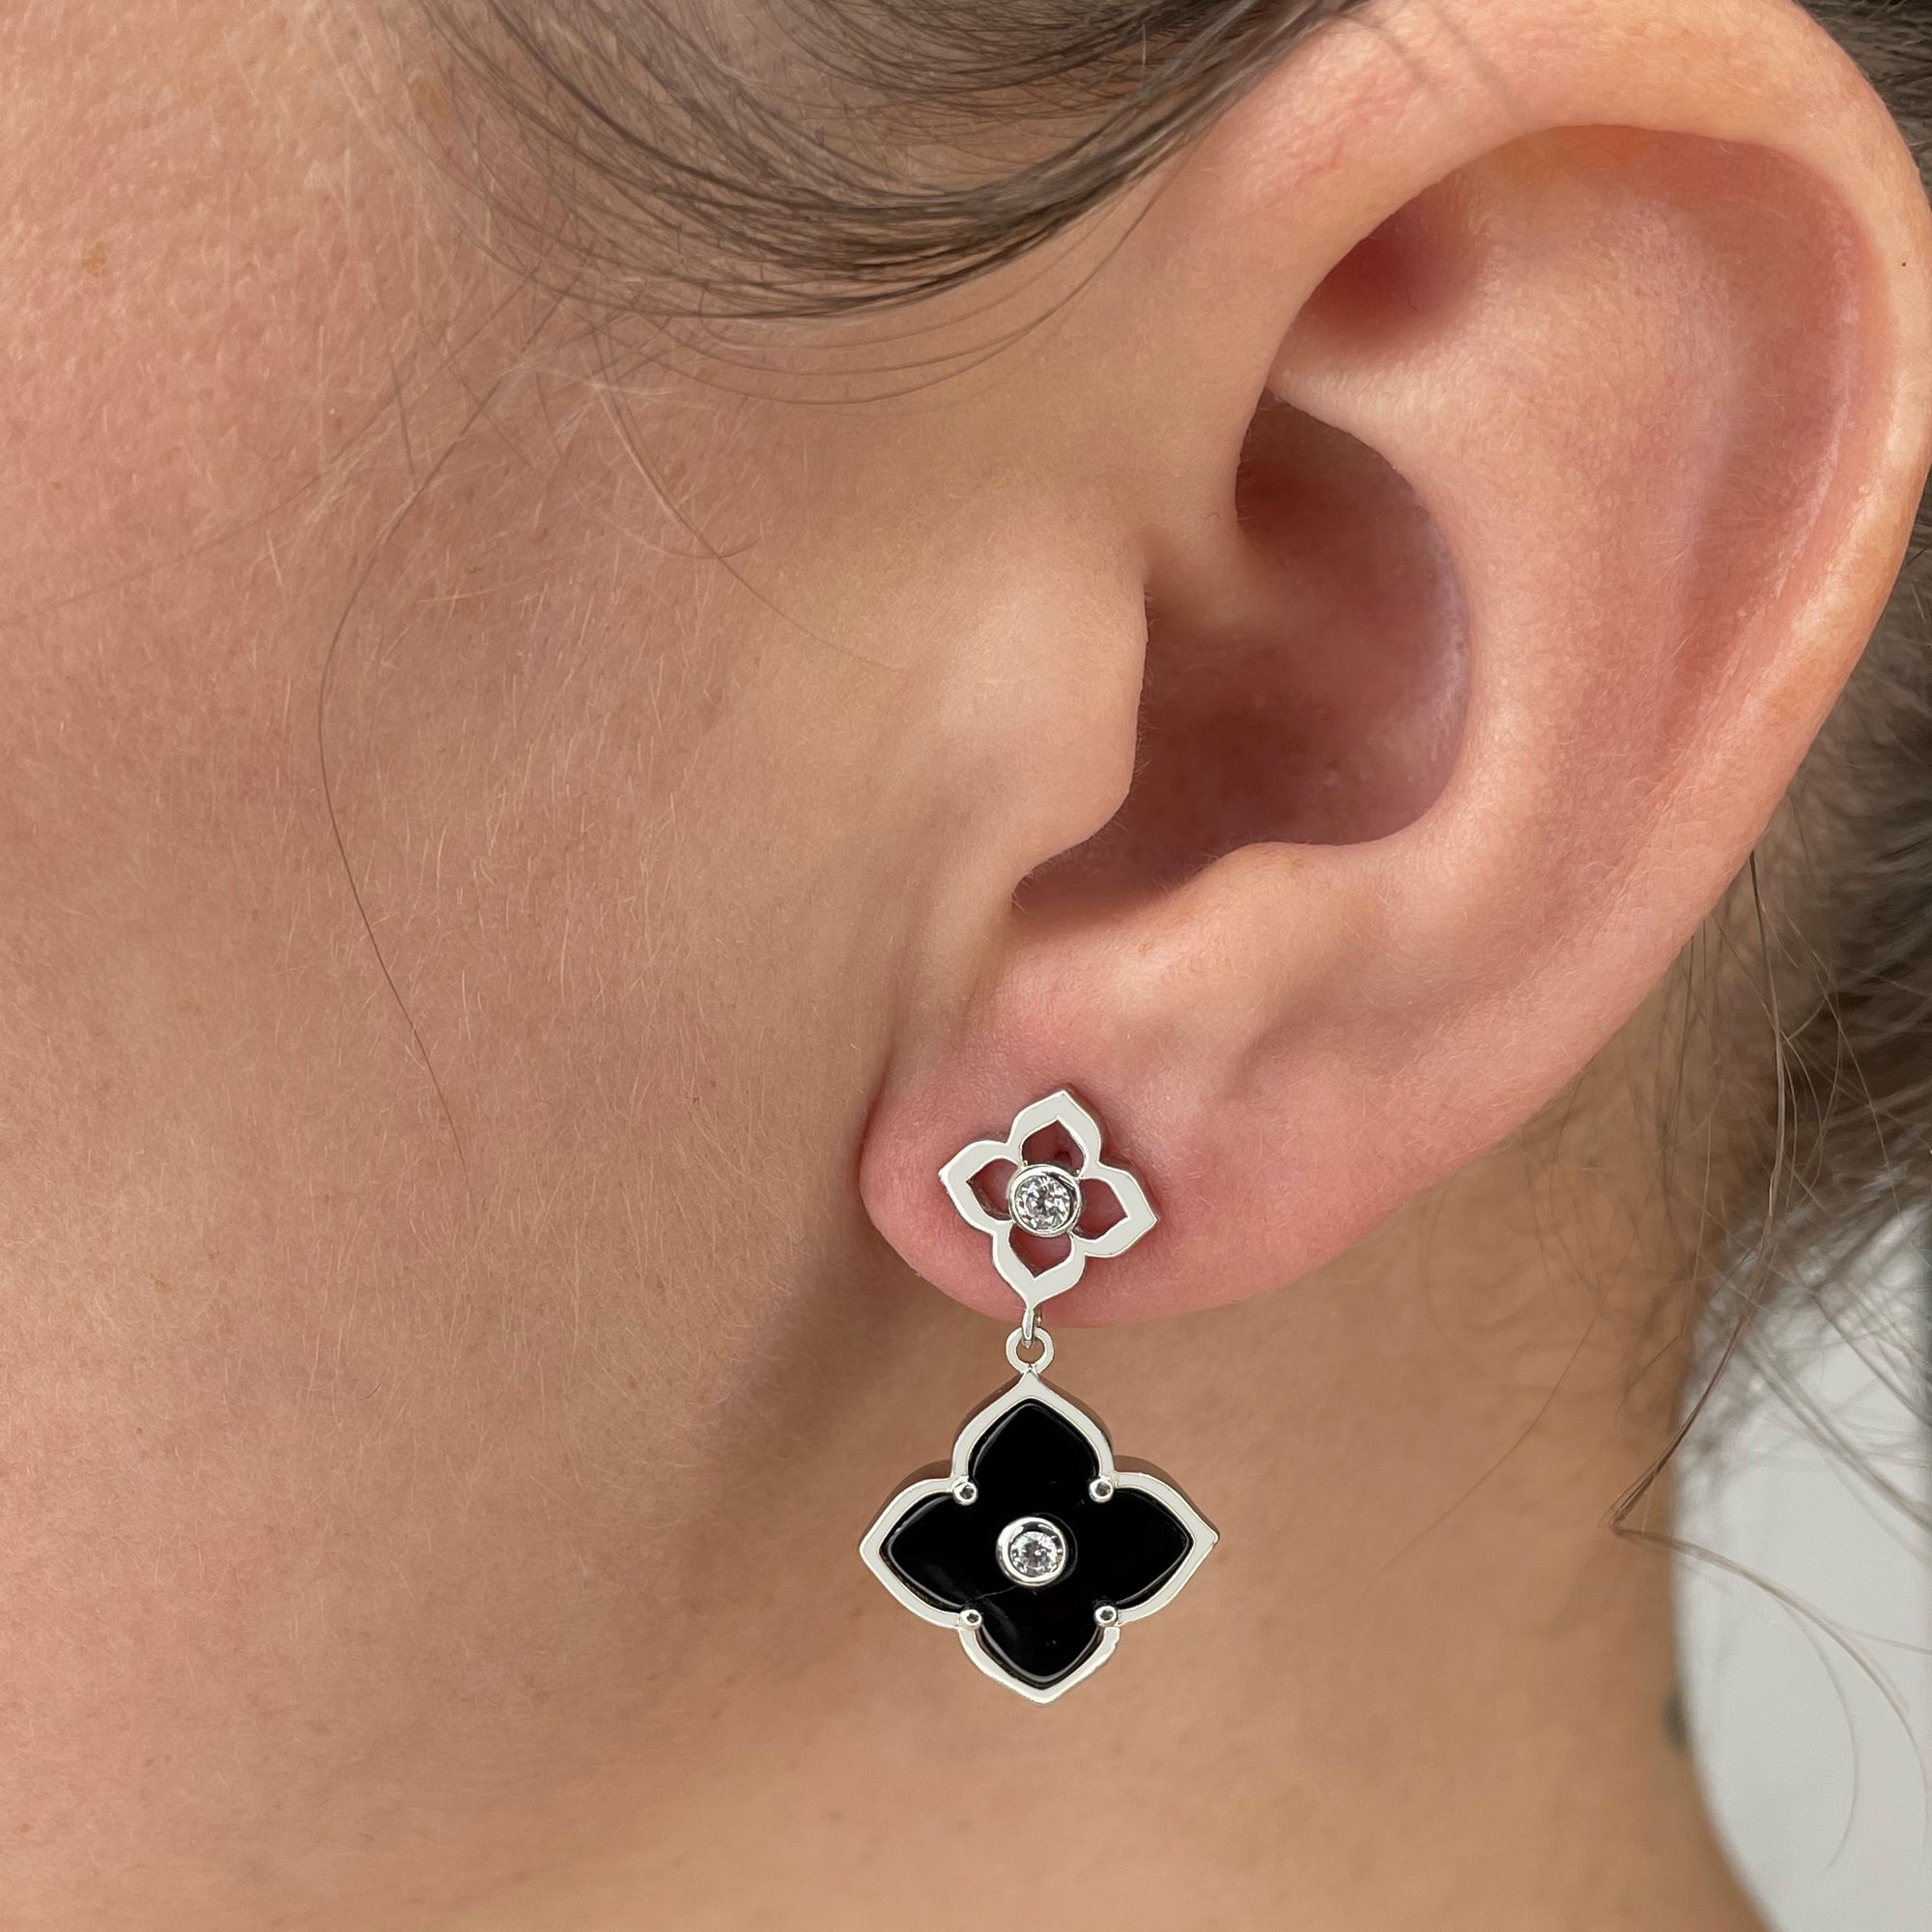 48763-earrings-fashion-jewelry-sterling-silver-48763-5.jpg